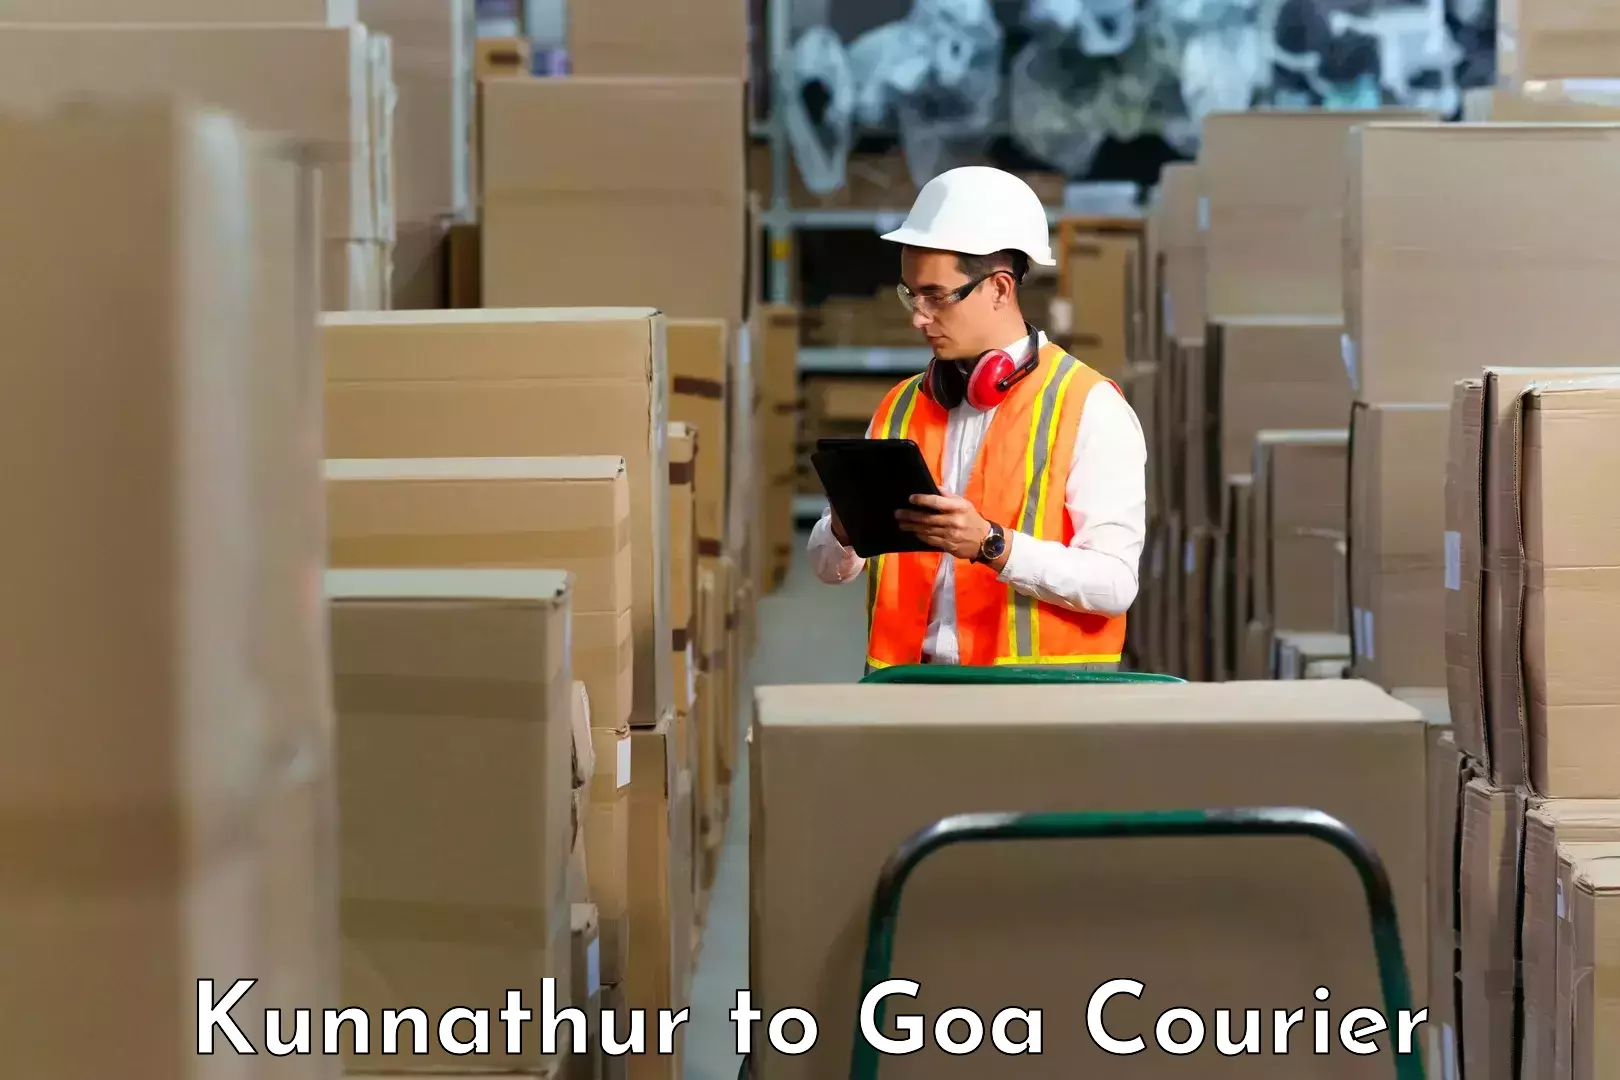 Digital courier platforms Kunnathur to Vasco da Gama